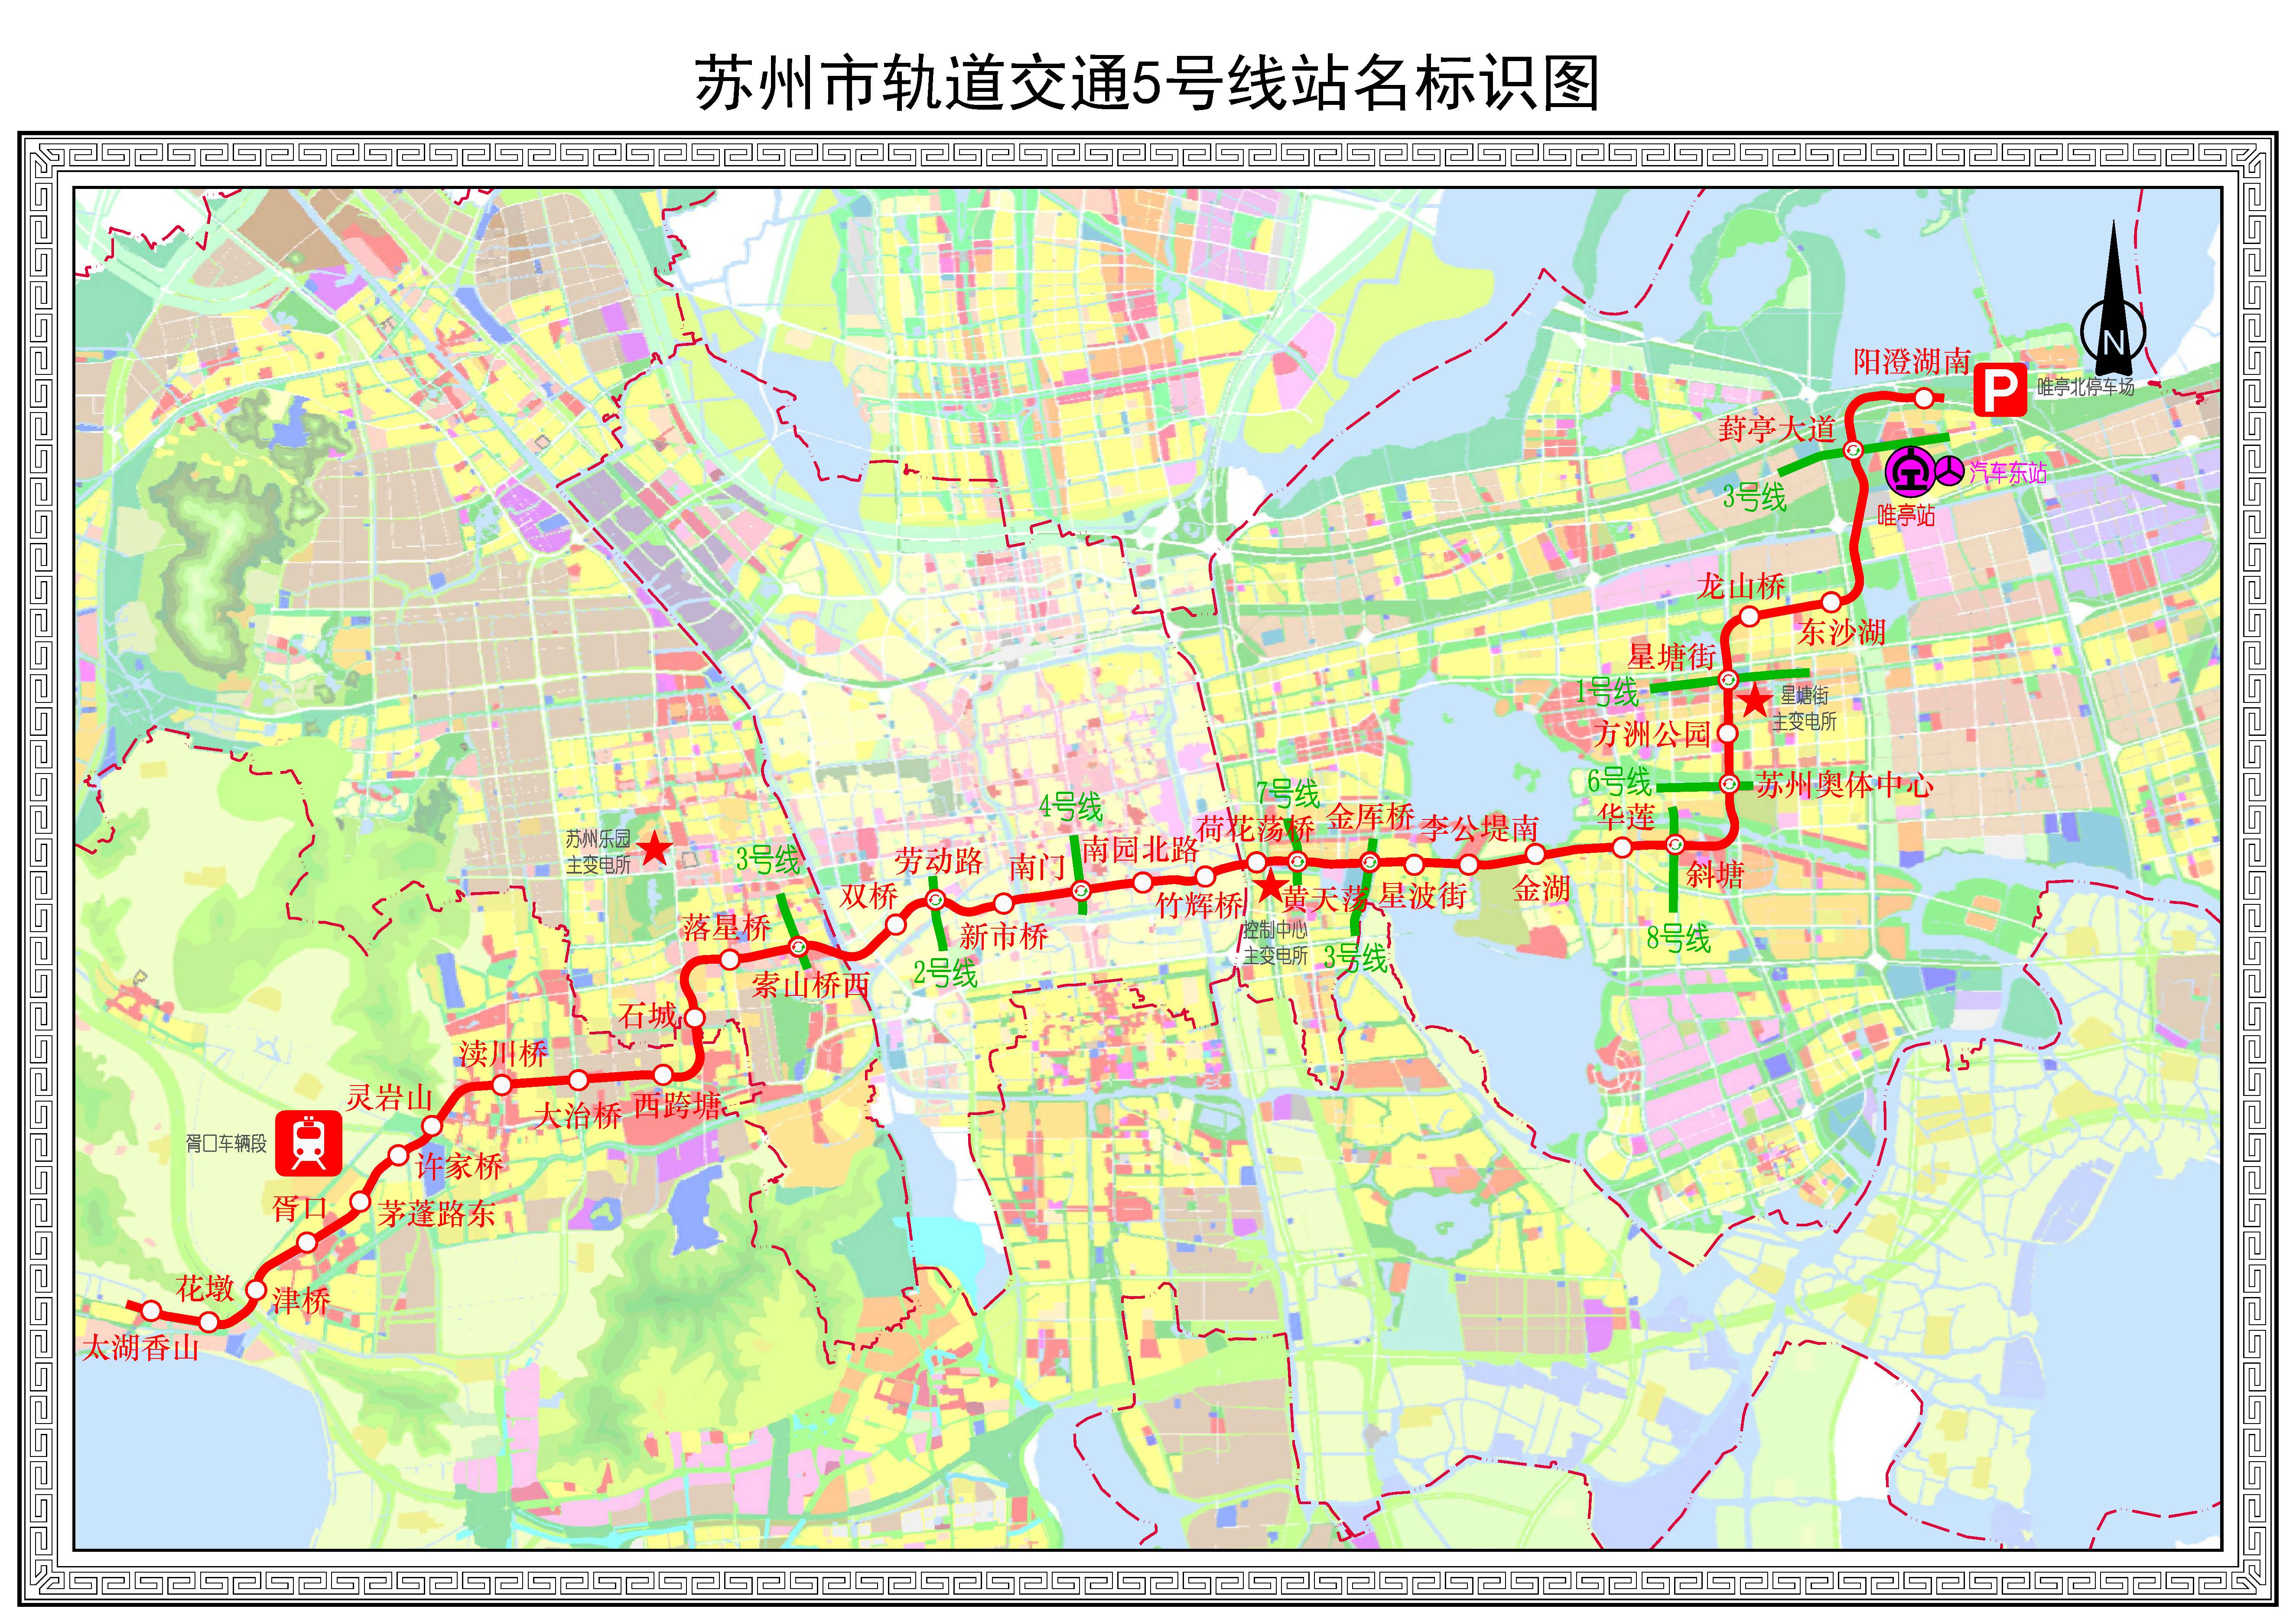 蘇州軌道交通5號線站名標識圖